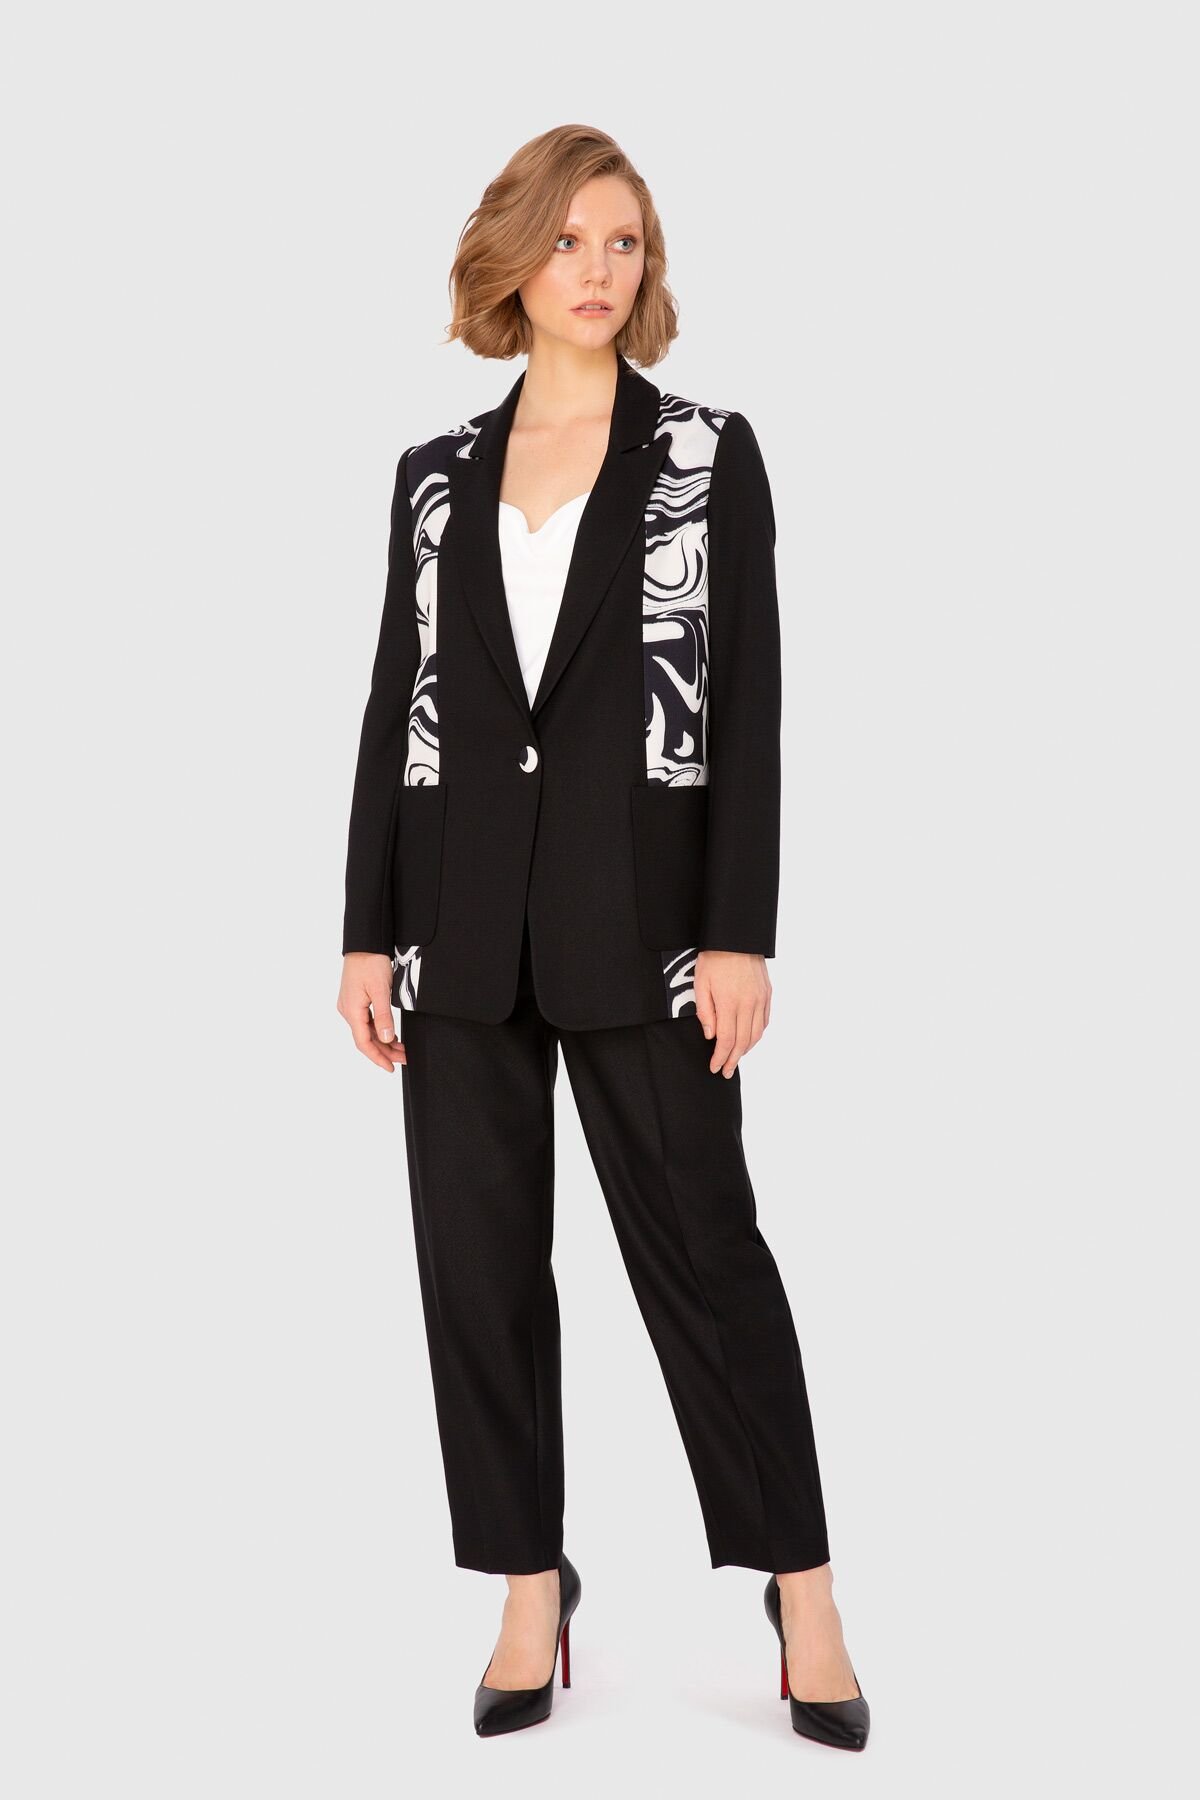 Black Contrast Patterned Casual Cut Suit